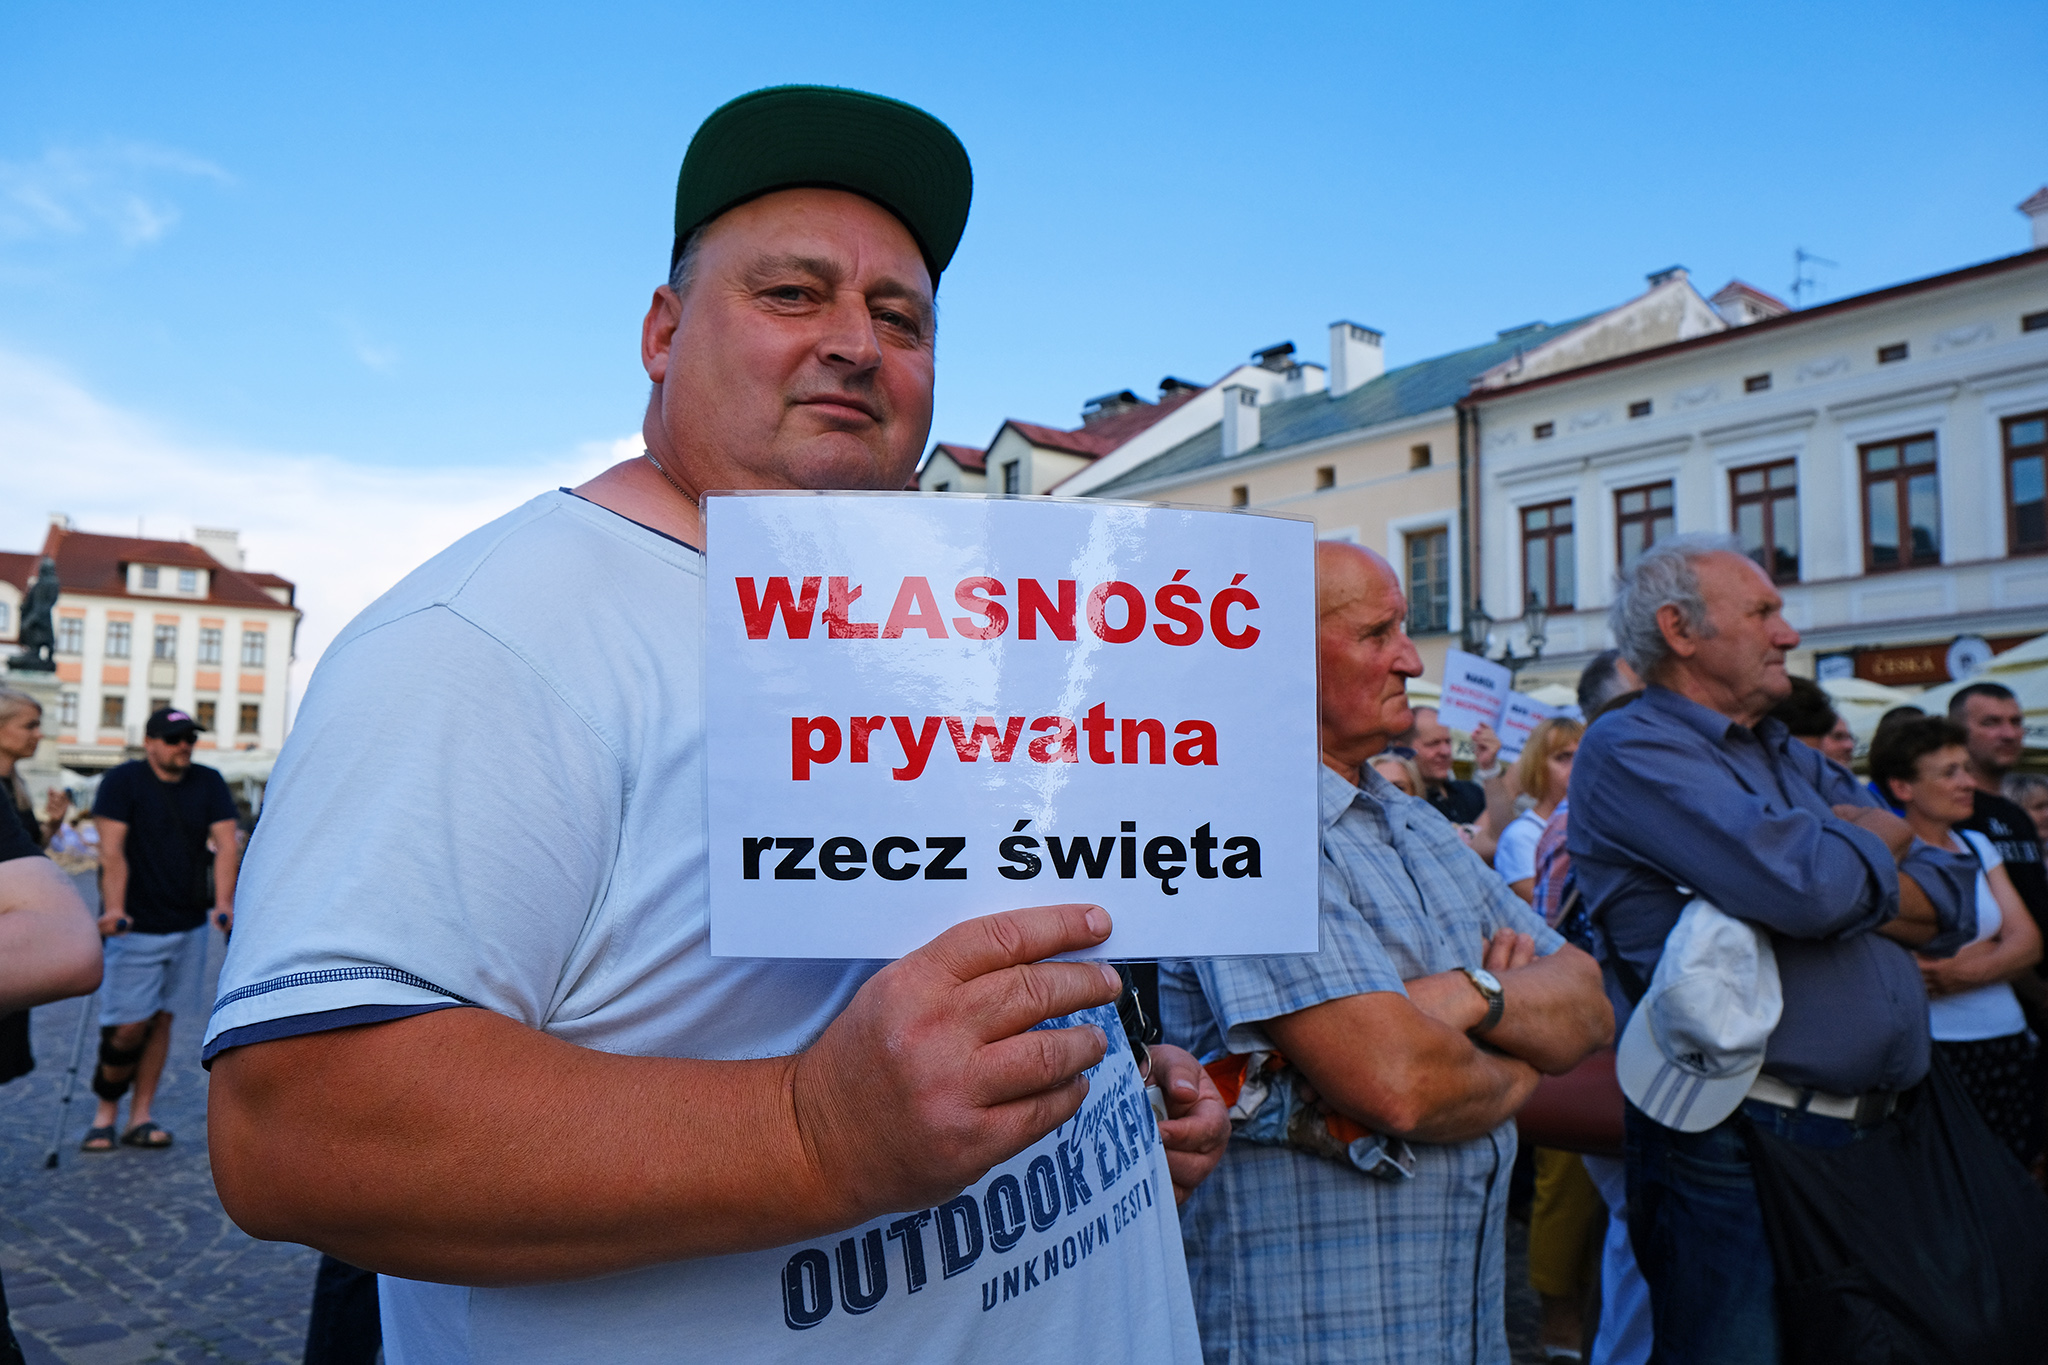 DSCF9340_RZESZOW_NEWS_SEBASTIAN_STANKIEWICZ